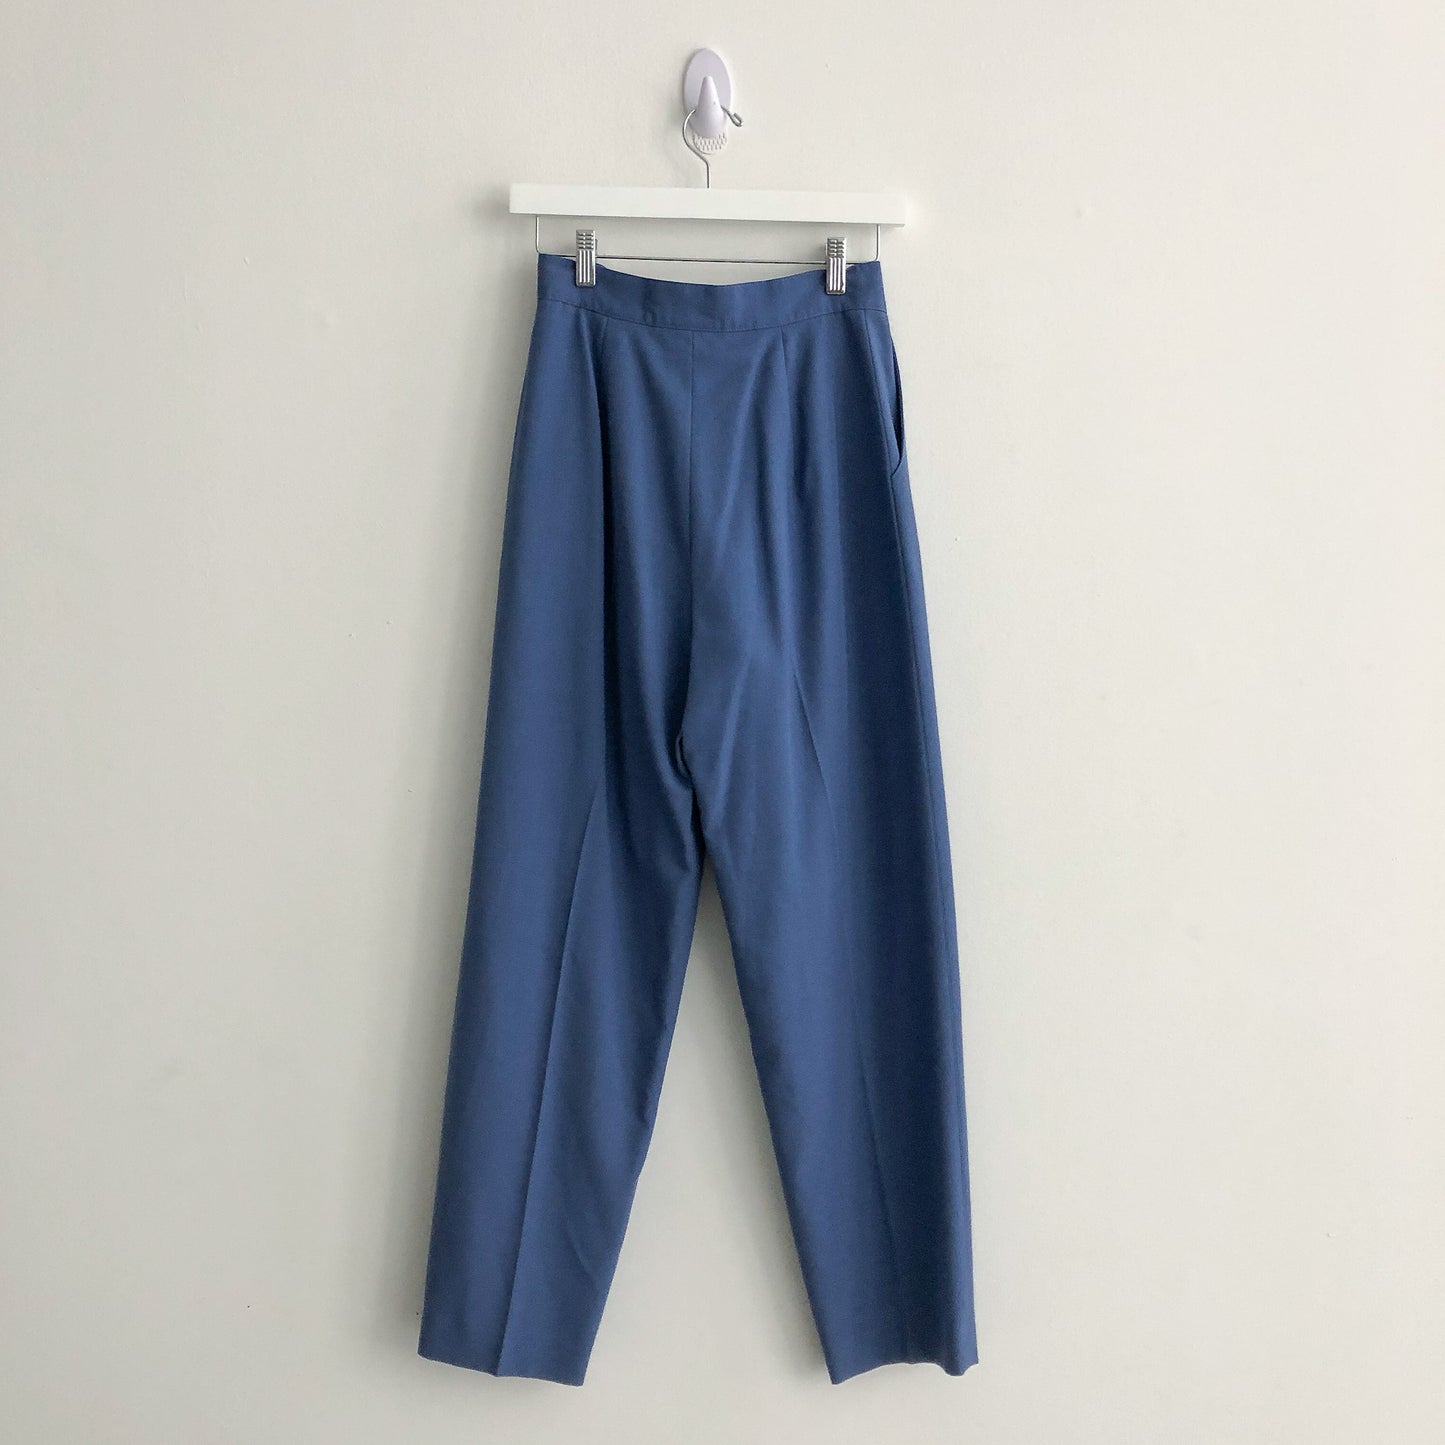 Vintage Dusty Blue Slacks